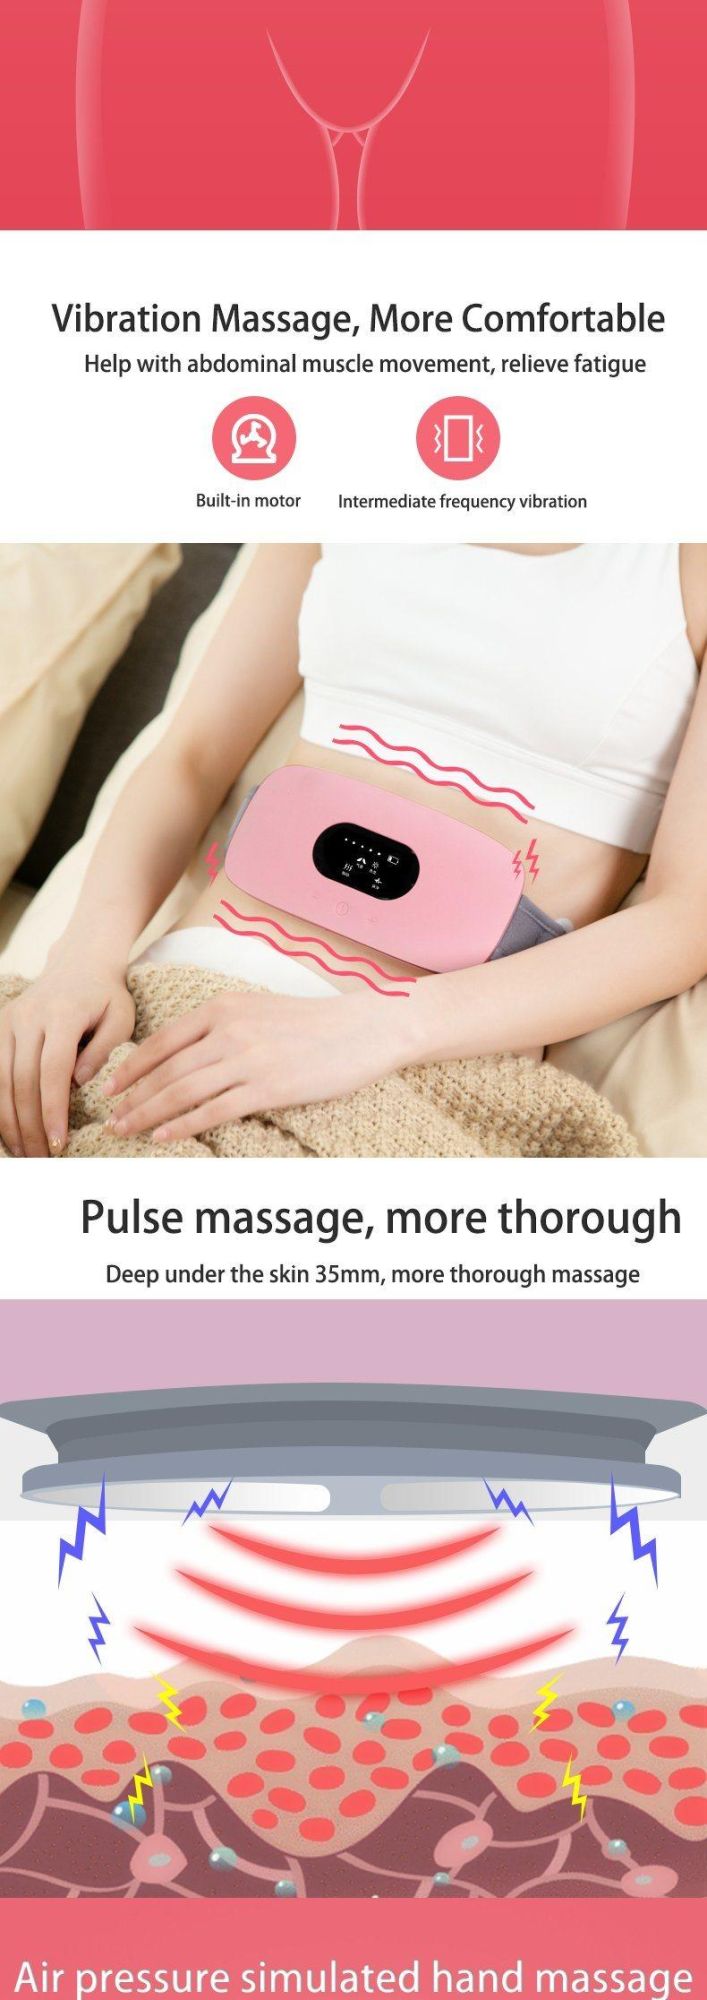 Hezheng Portable Weight Loss Massage Equipment Belt Body Heating Slimming Machine